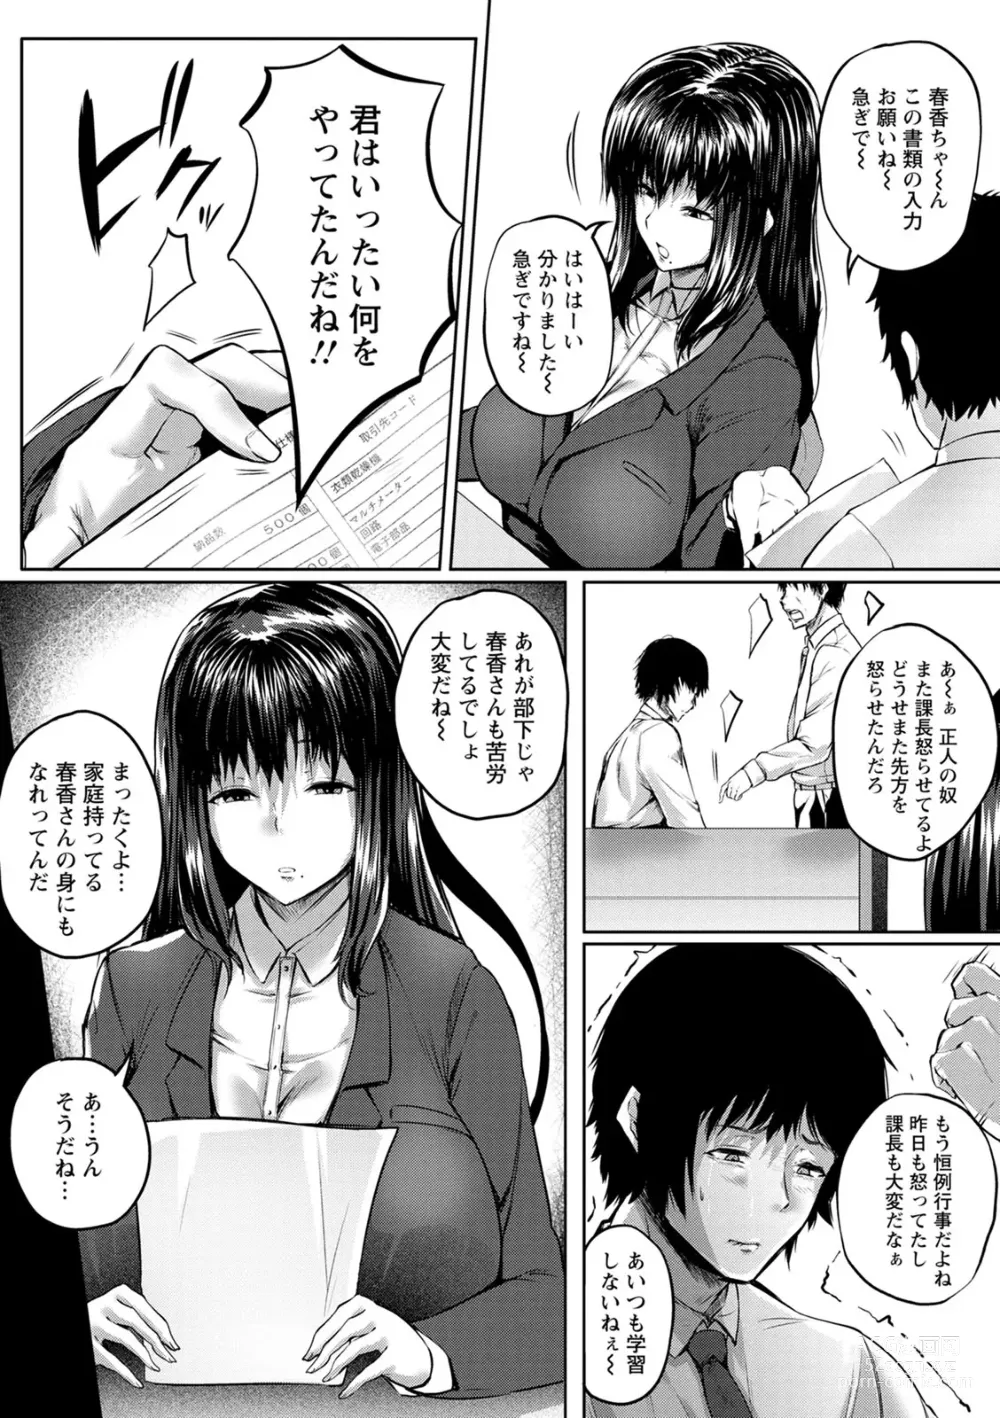 Page 9 of manga Nikuyoku no Shigarami